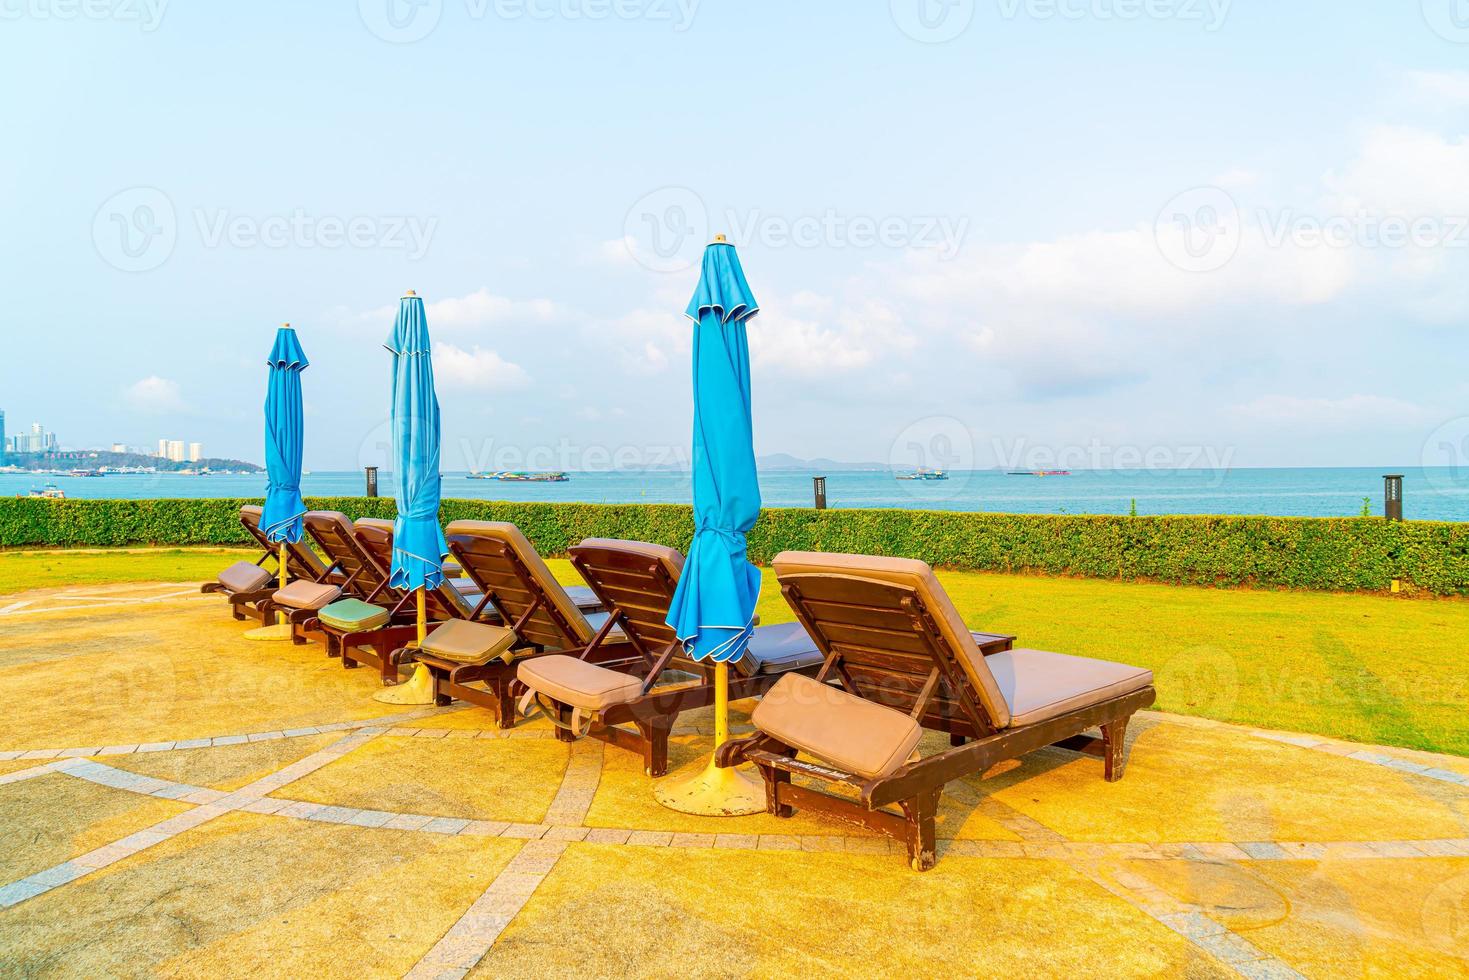 sedia piscina e ombrellone intorno alla piscina con sfondo mare oceano foto